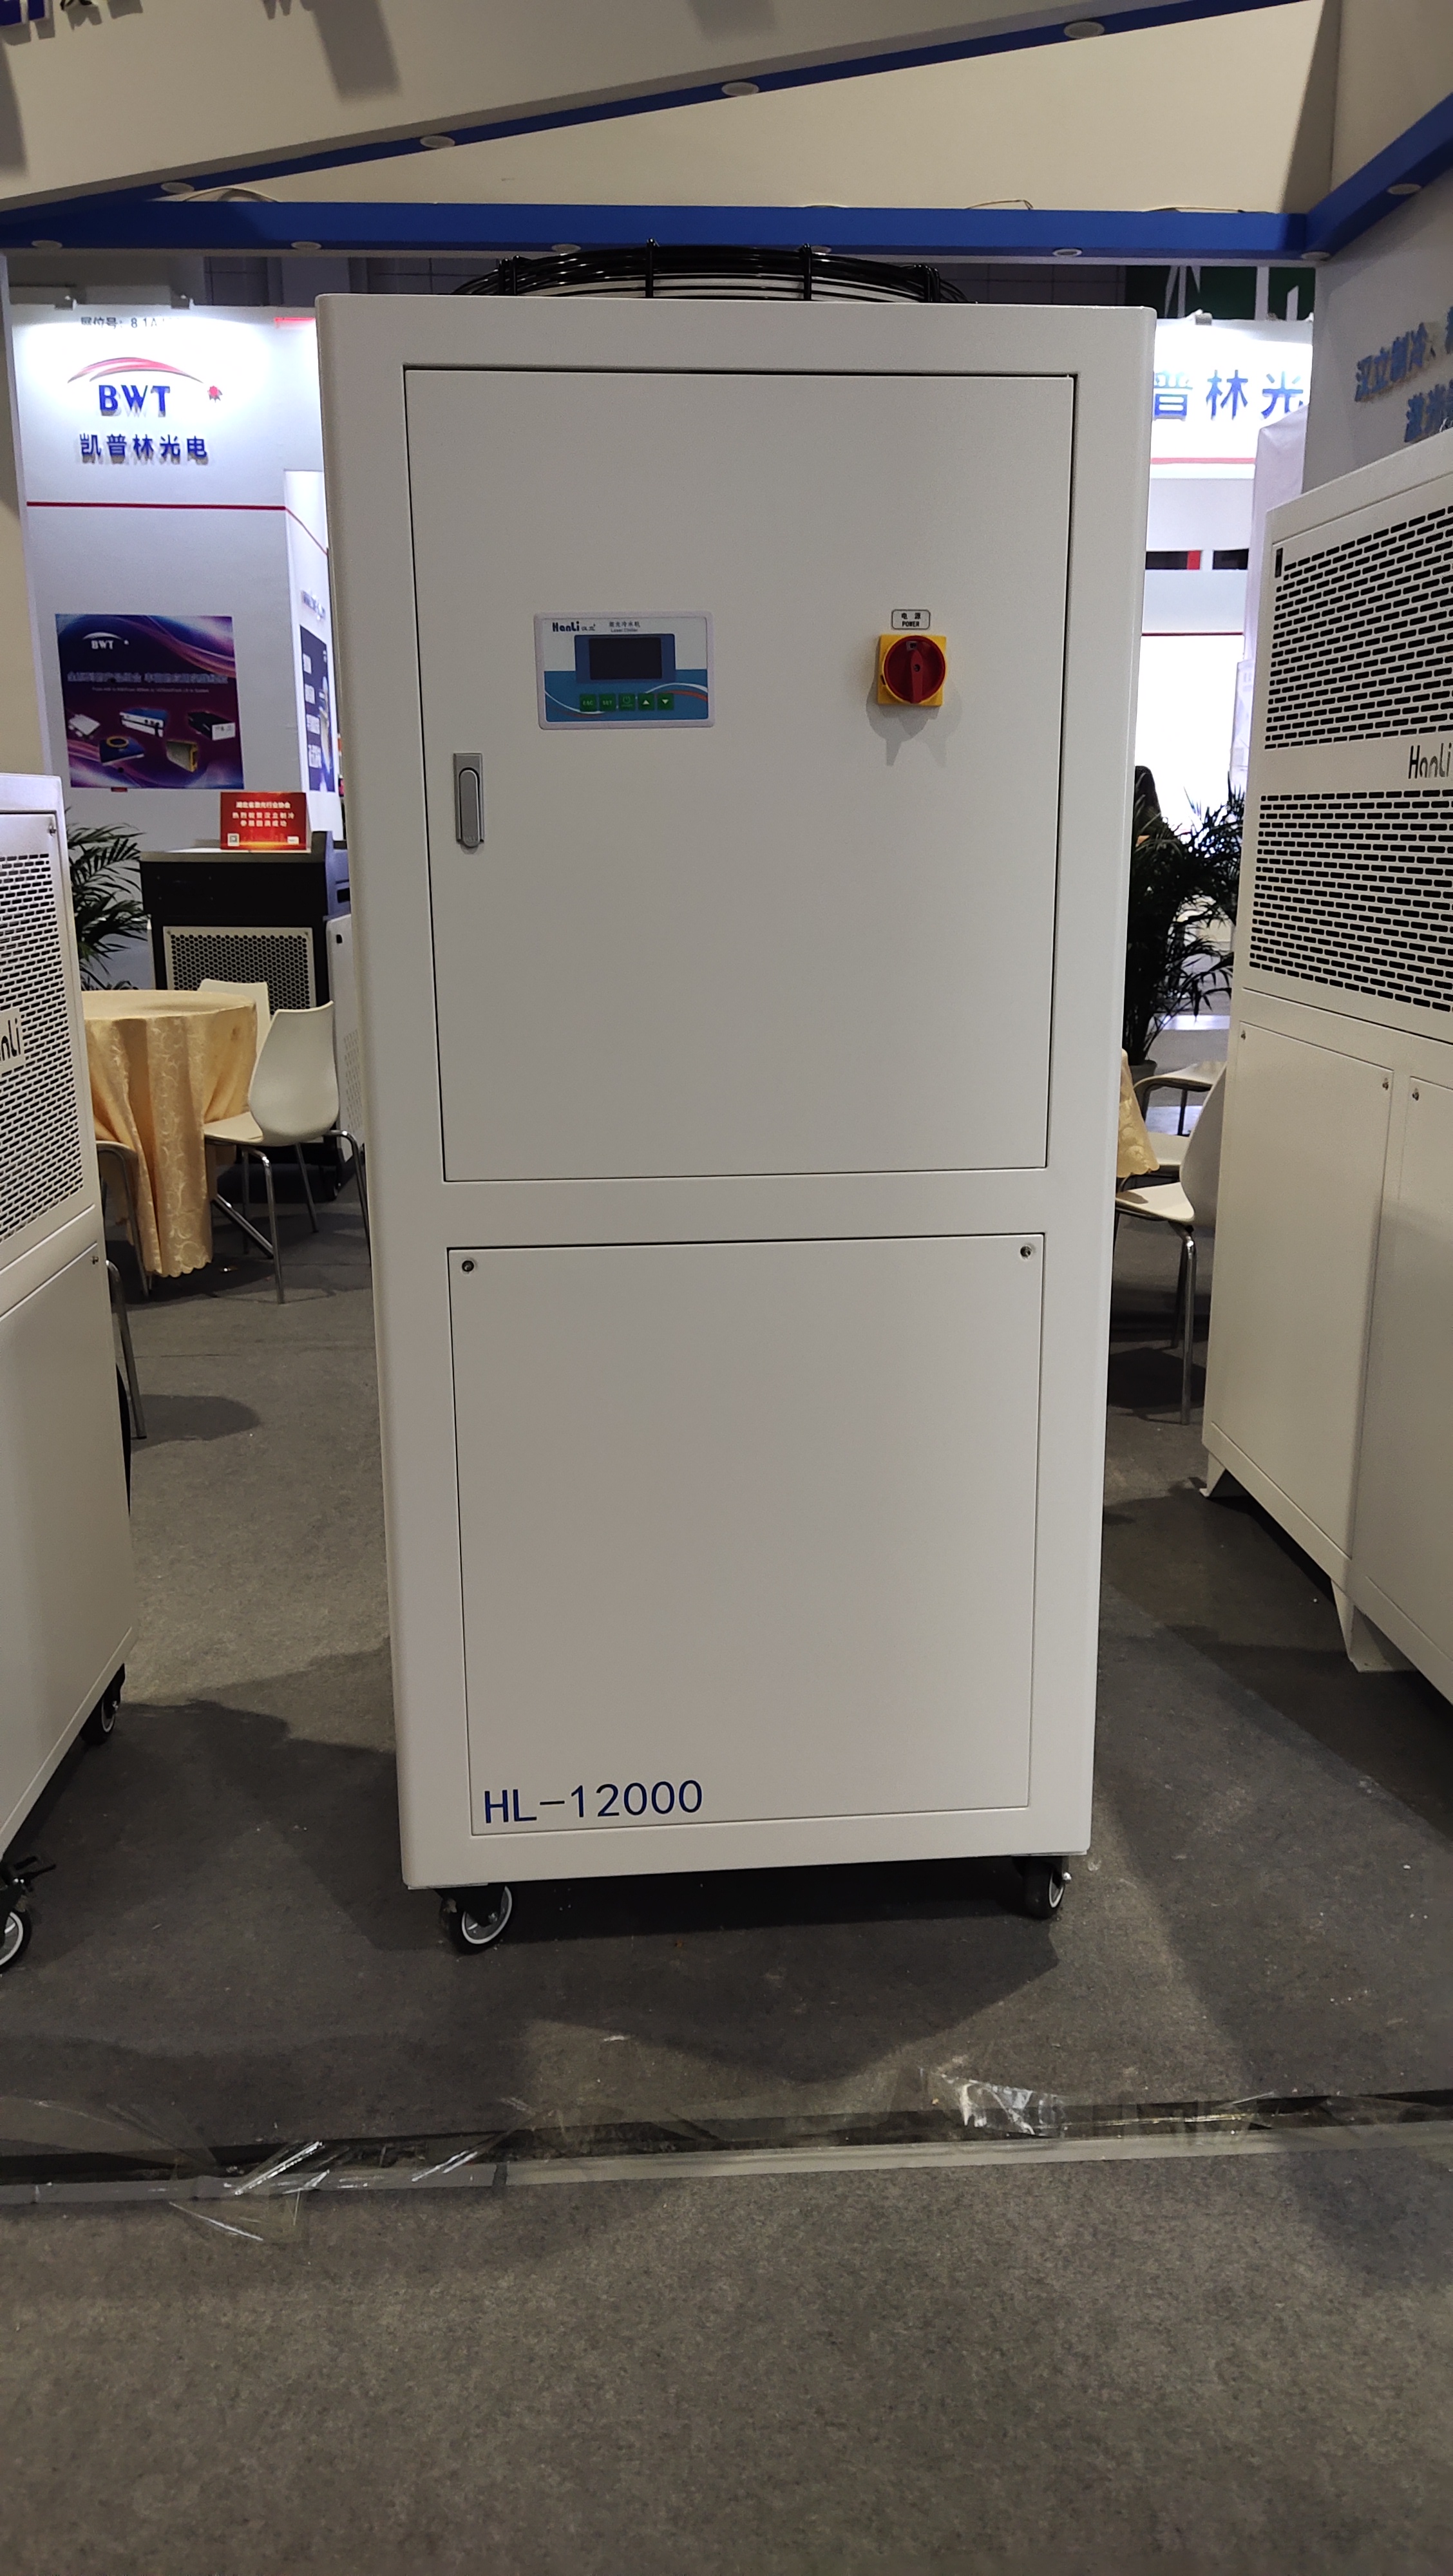 HANLI HL-12000 12000w laser chiller Matching 12000W fiber laser-large cooling capacity